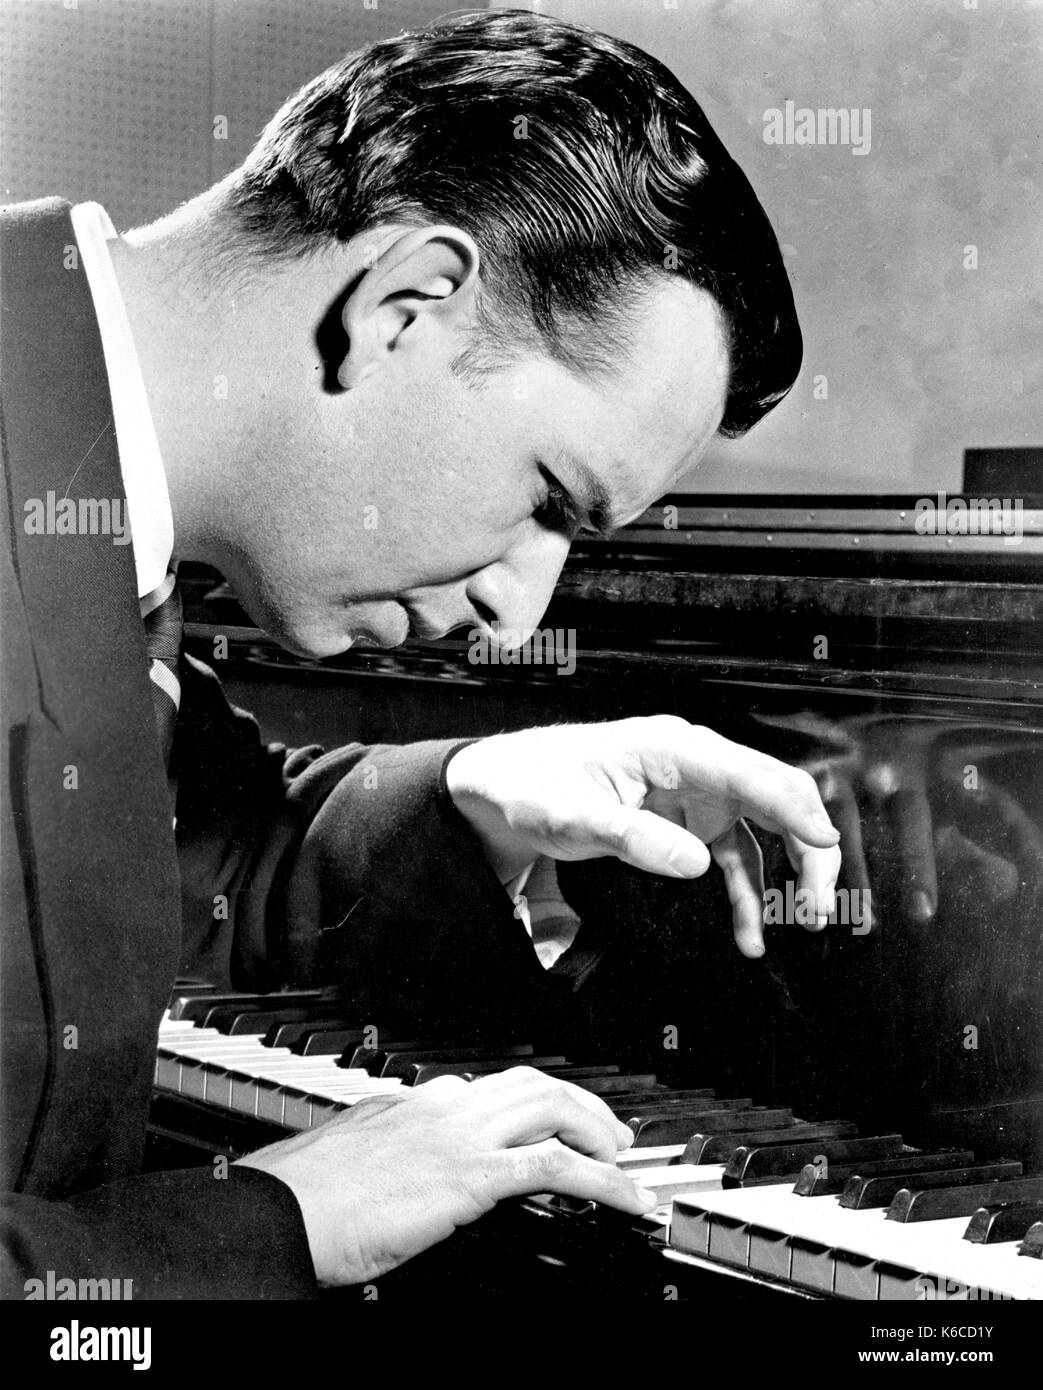 Grant JOHANNESEN (1921-2005) Foto promozionale del pianista americano del 1955. Foto: Olaf Ranum Foto Stock